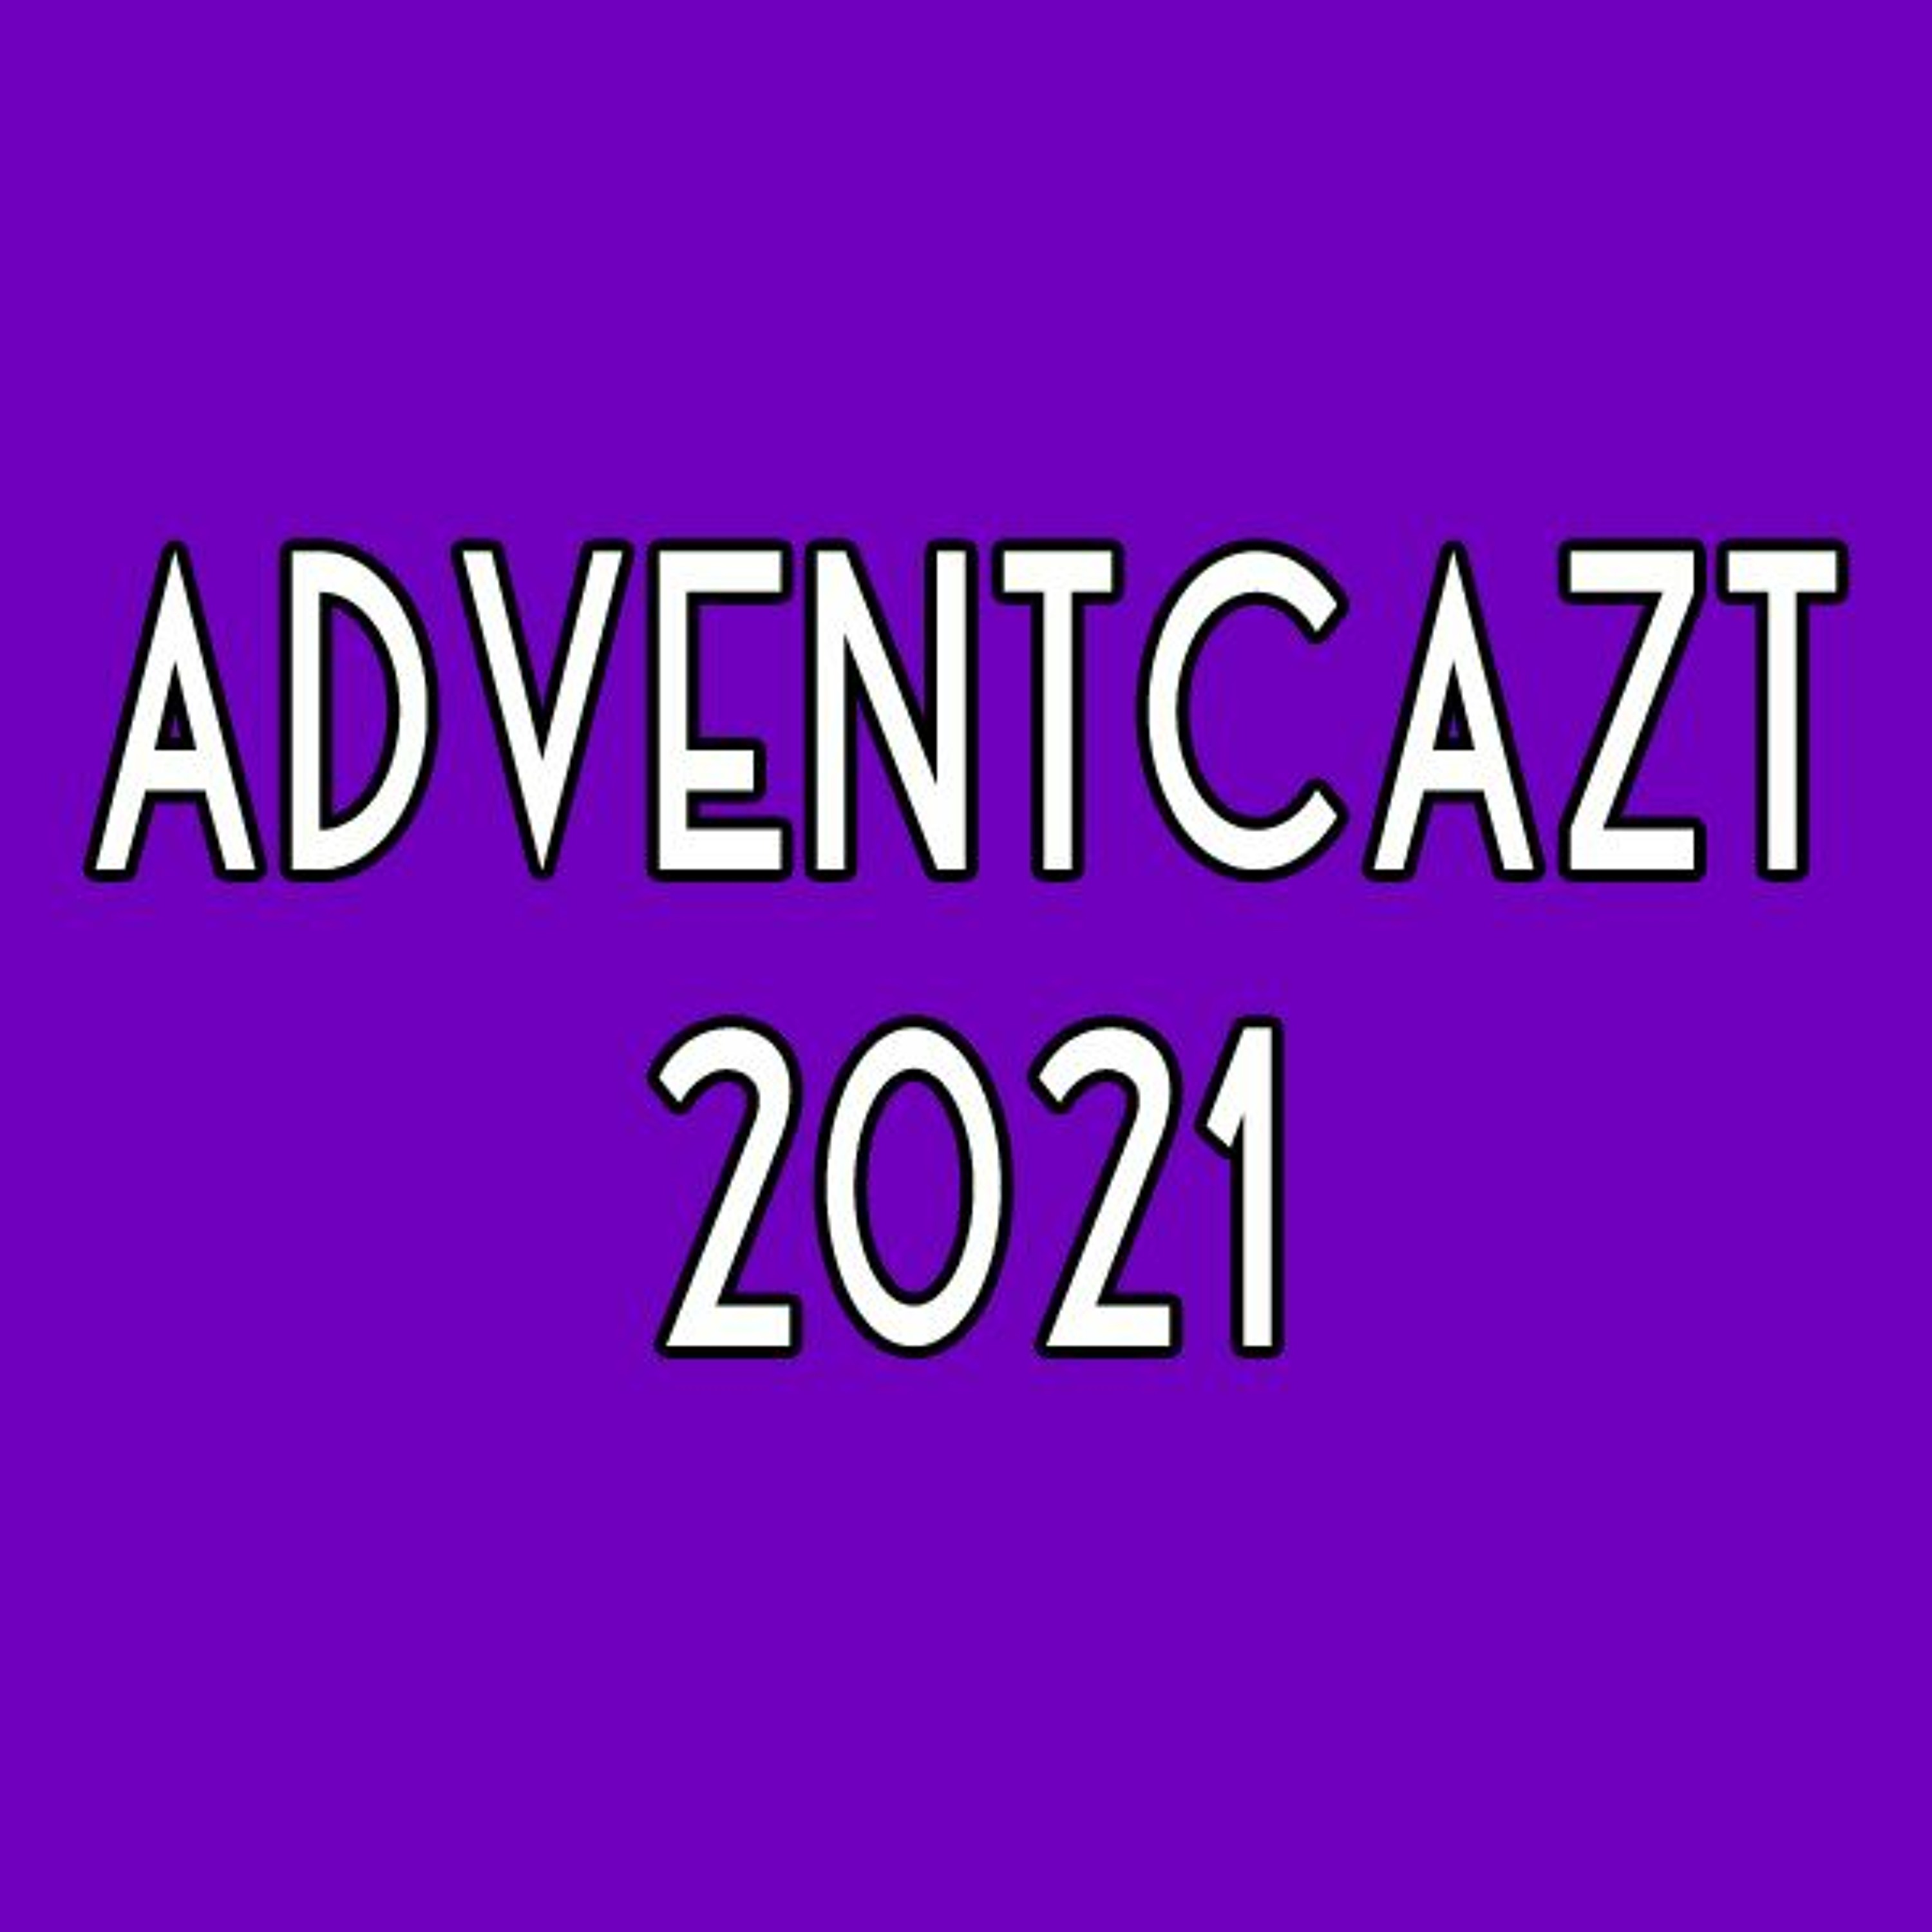 ADVENTCAzT 2021: 26 - Thursday 4th Week of Advent